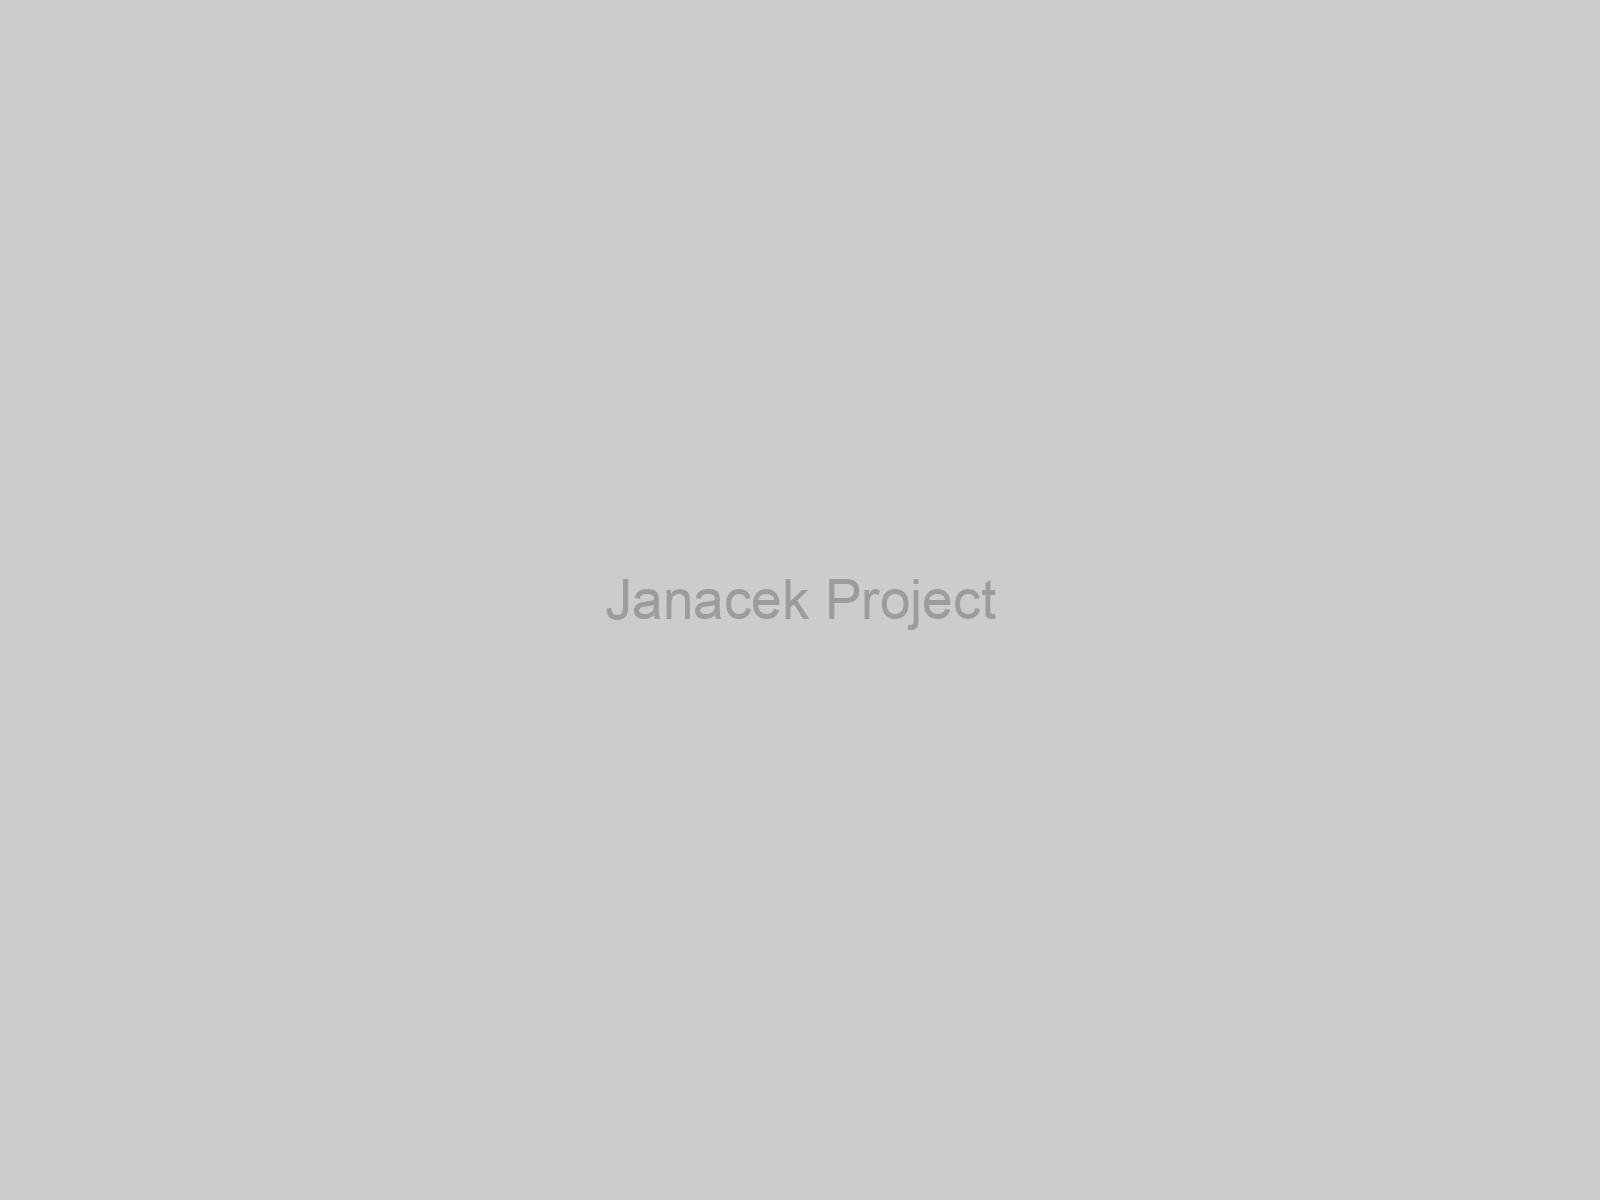 Janacek Project